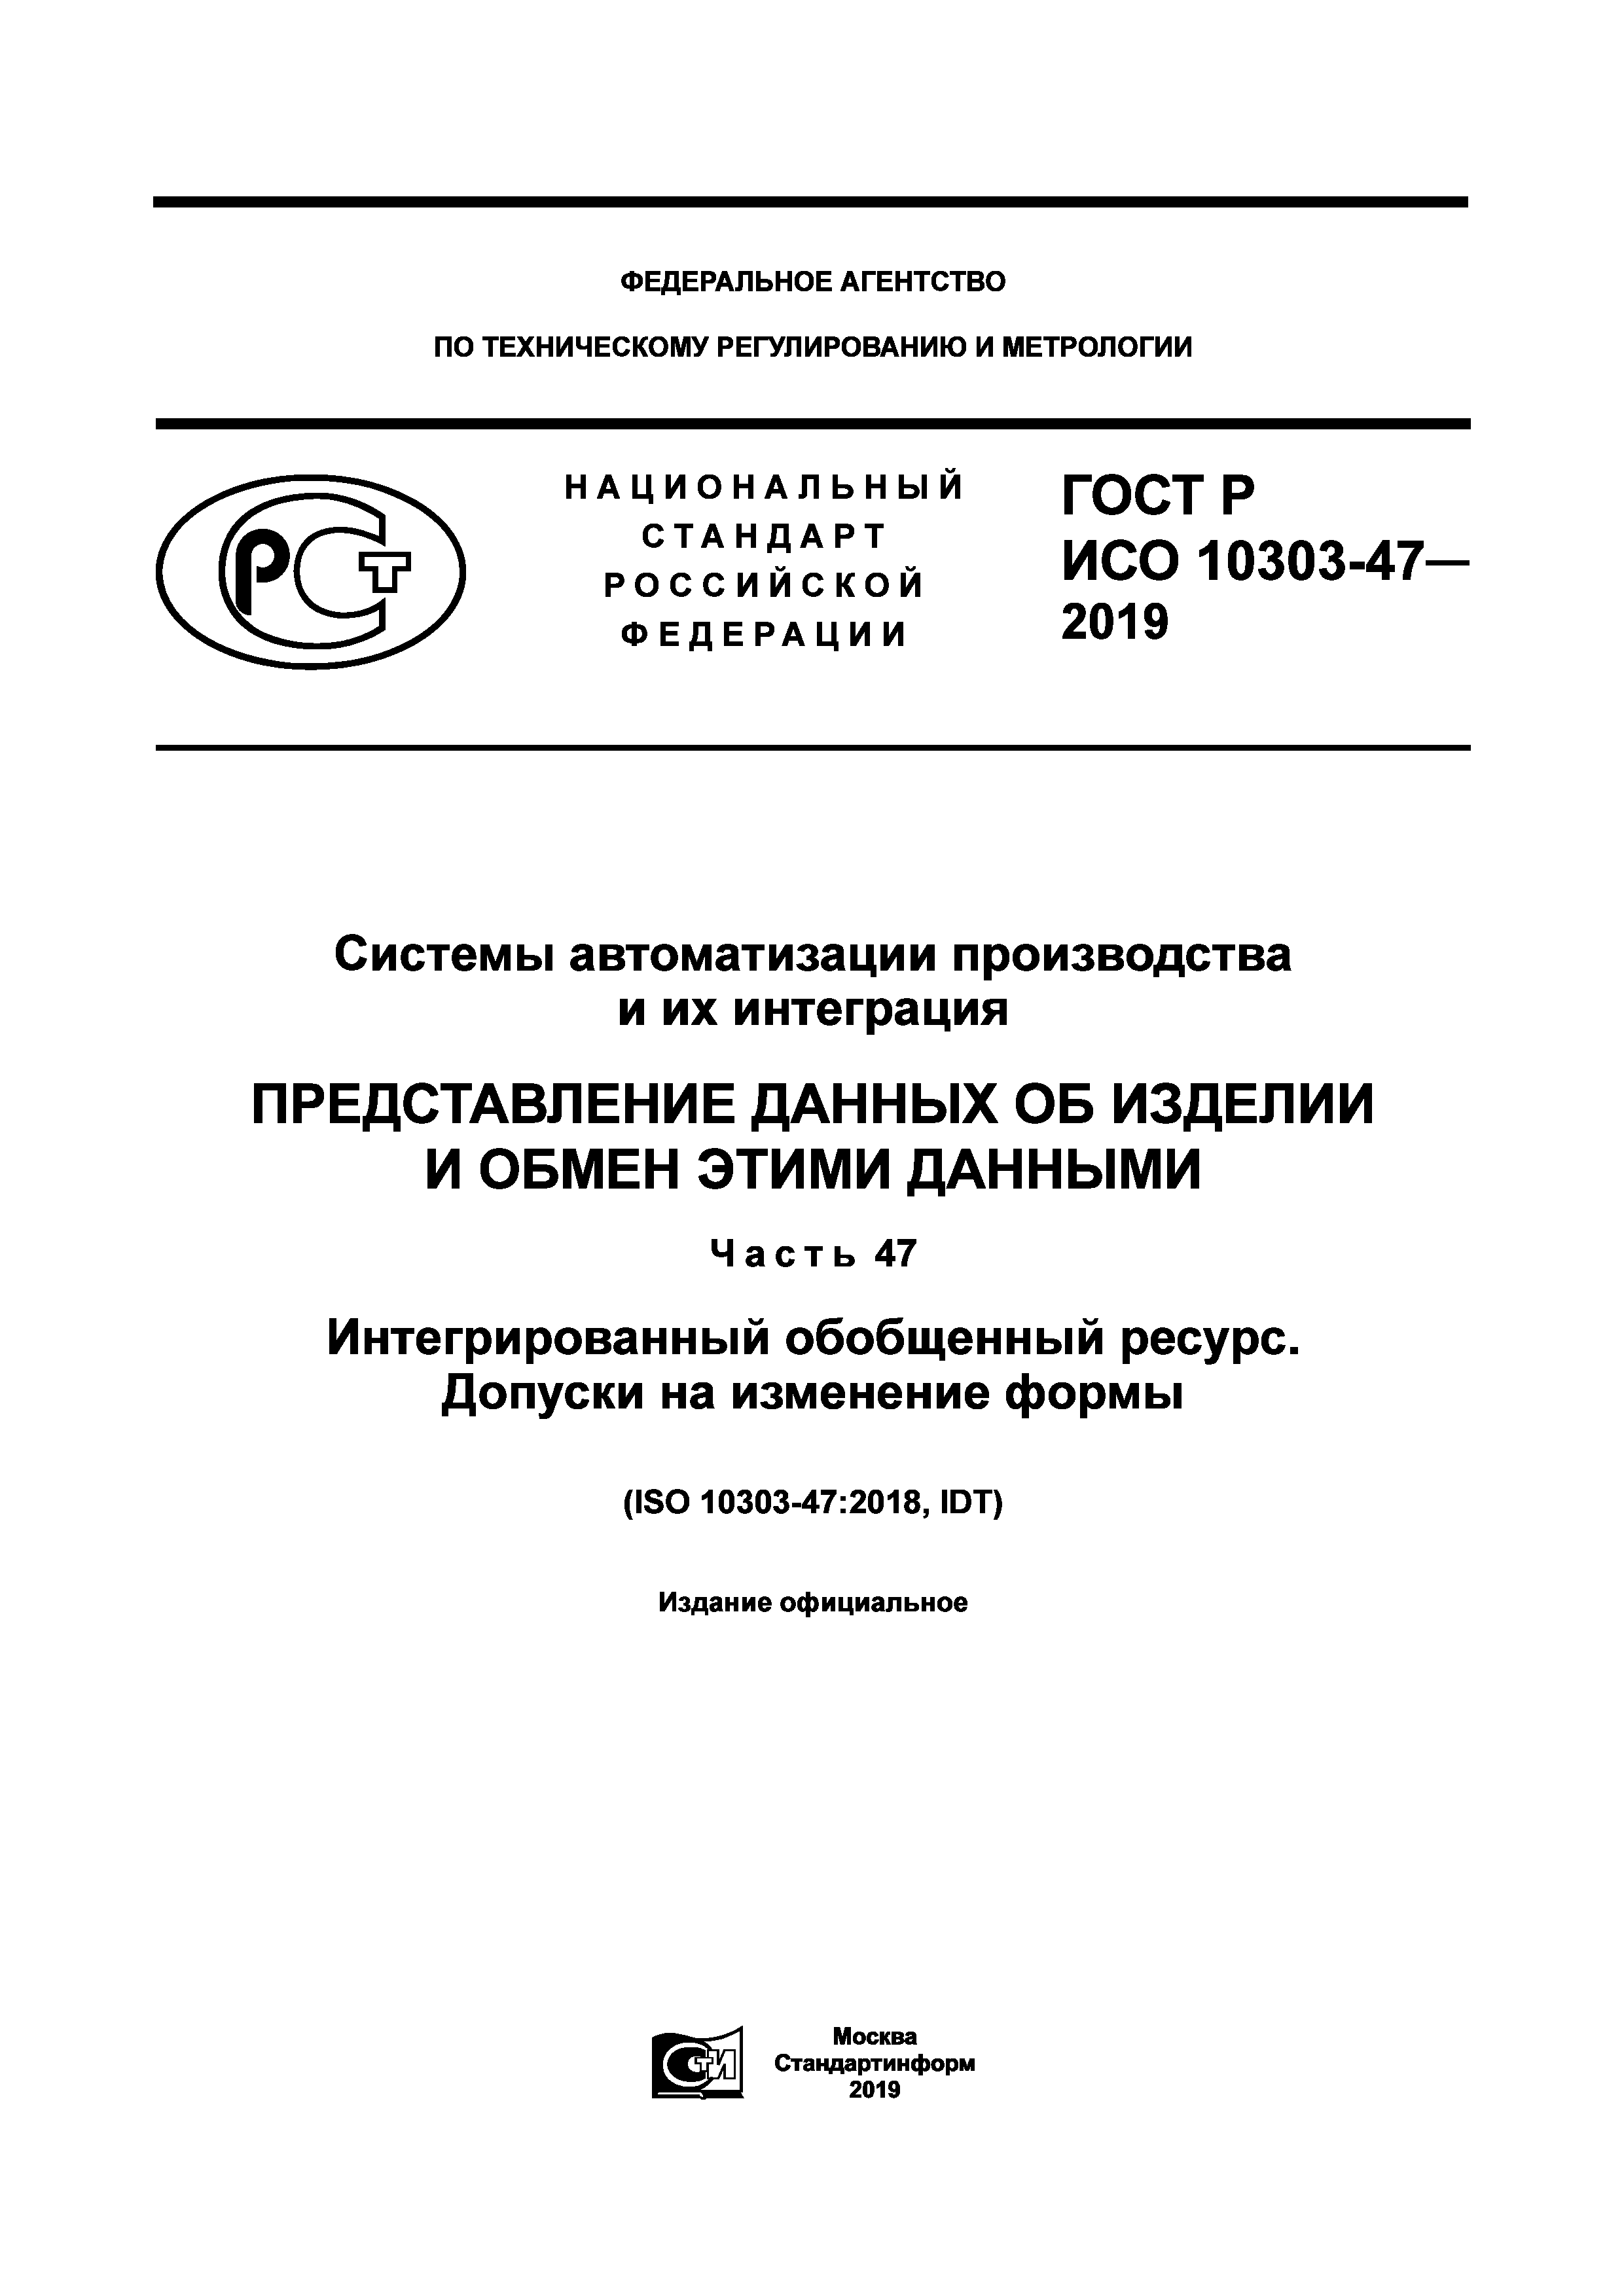 ГОСТ Р ИСО 10303-47-2019